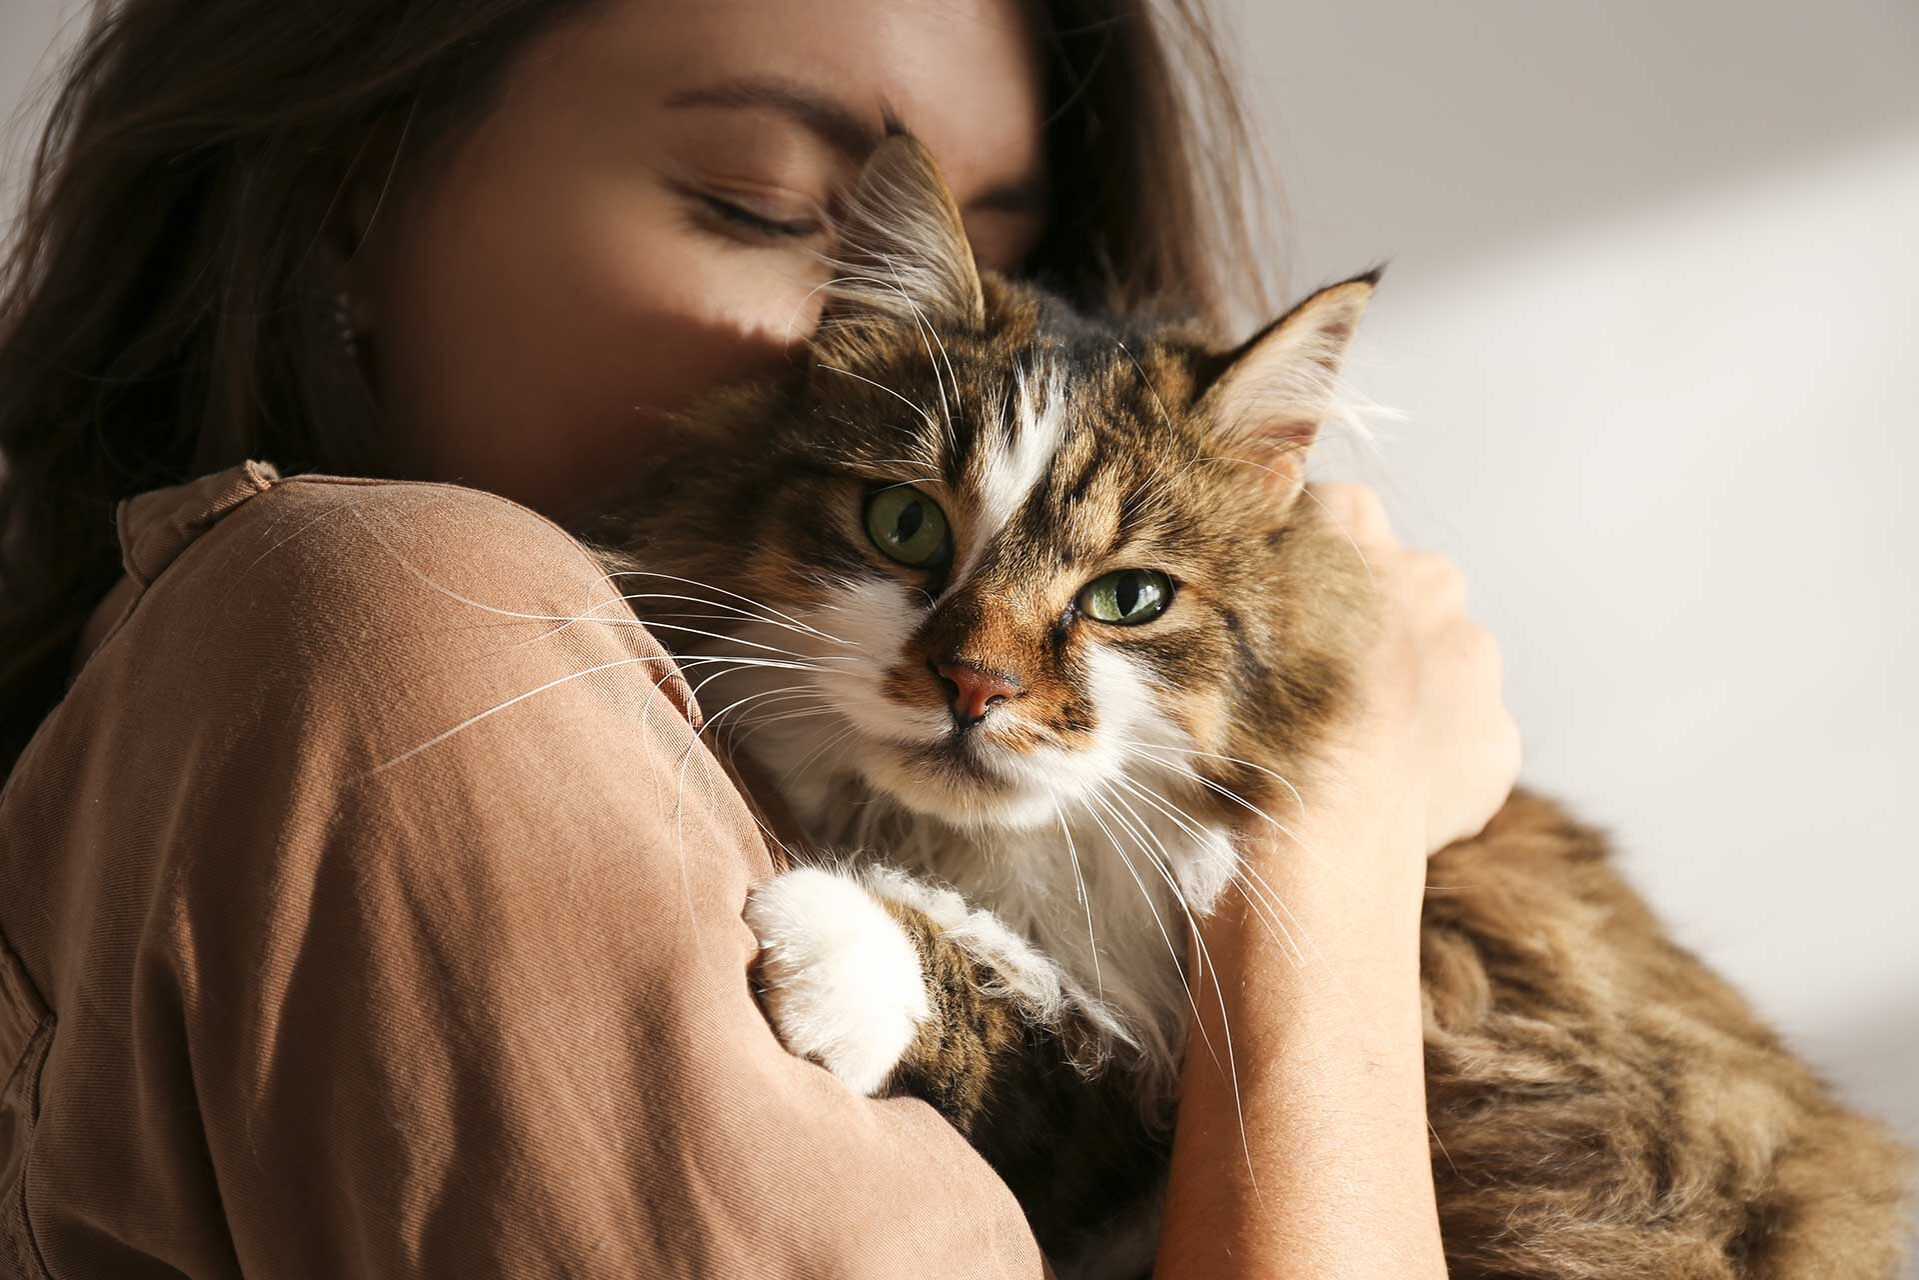 Kuscheln mit Katze – wie viel Nähe ist gut?